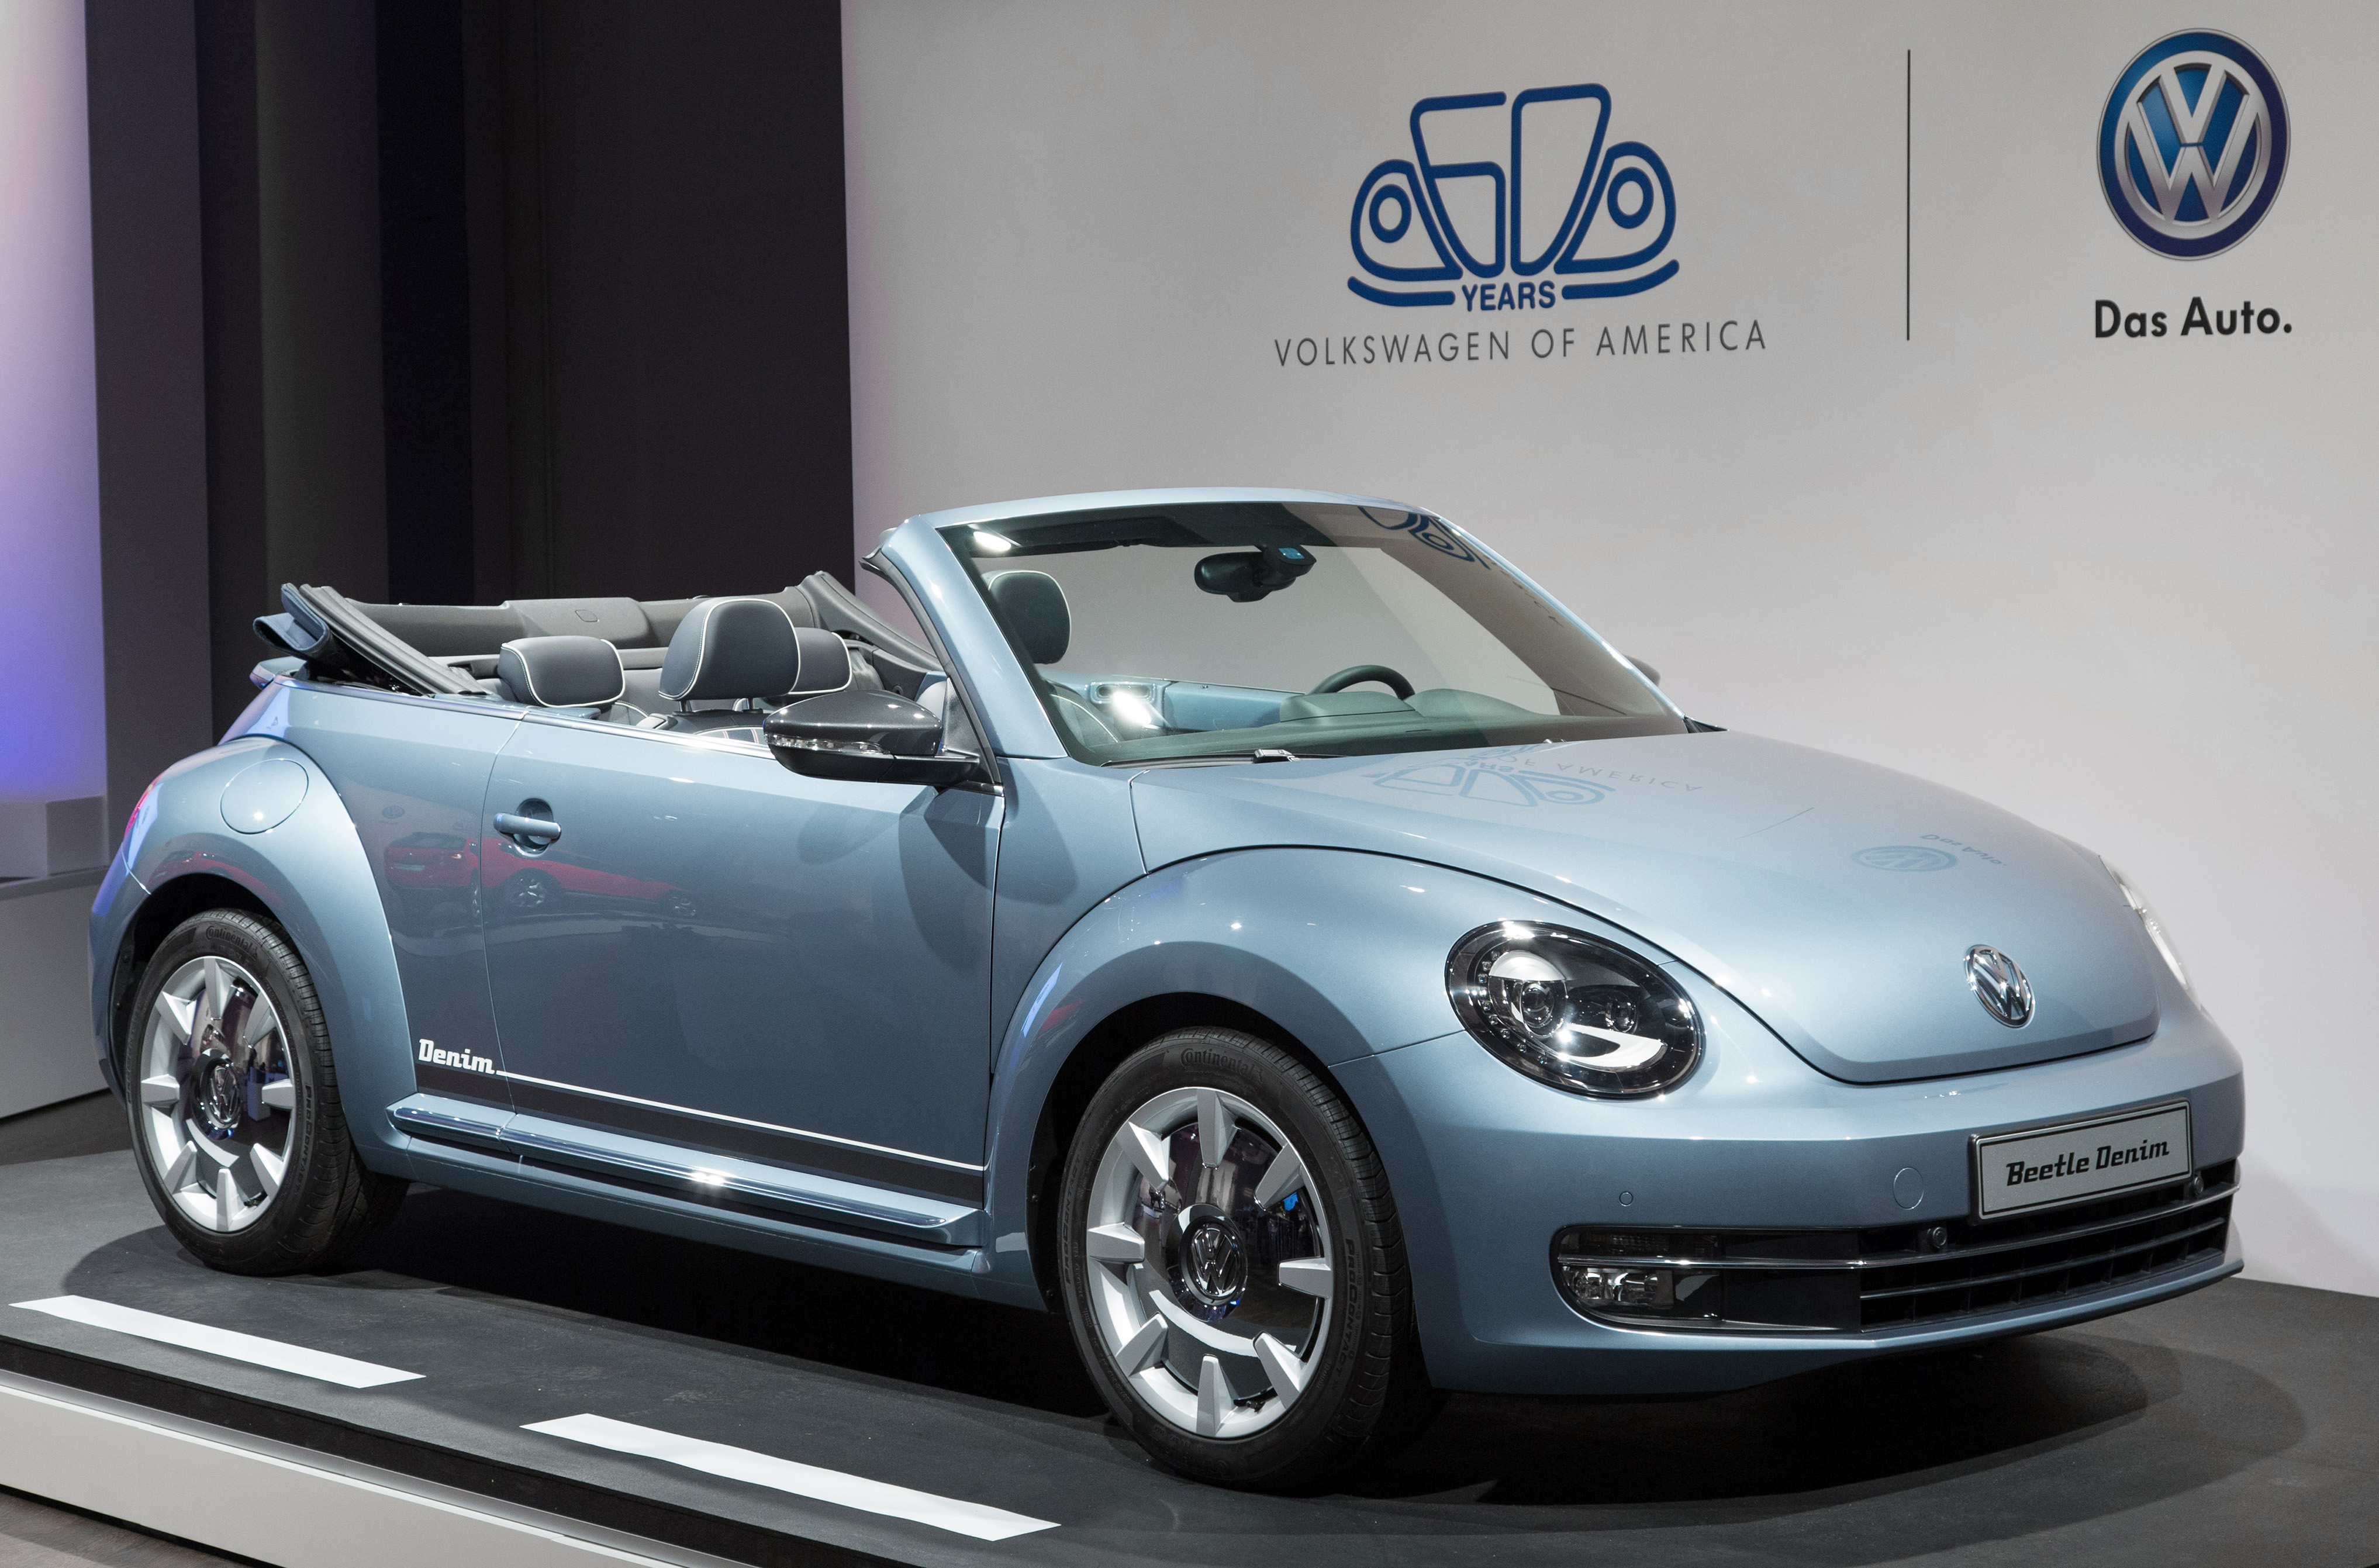 Volkswagen Beetle Cabriolet mod specifications